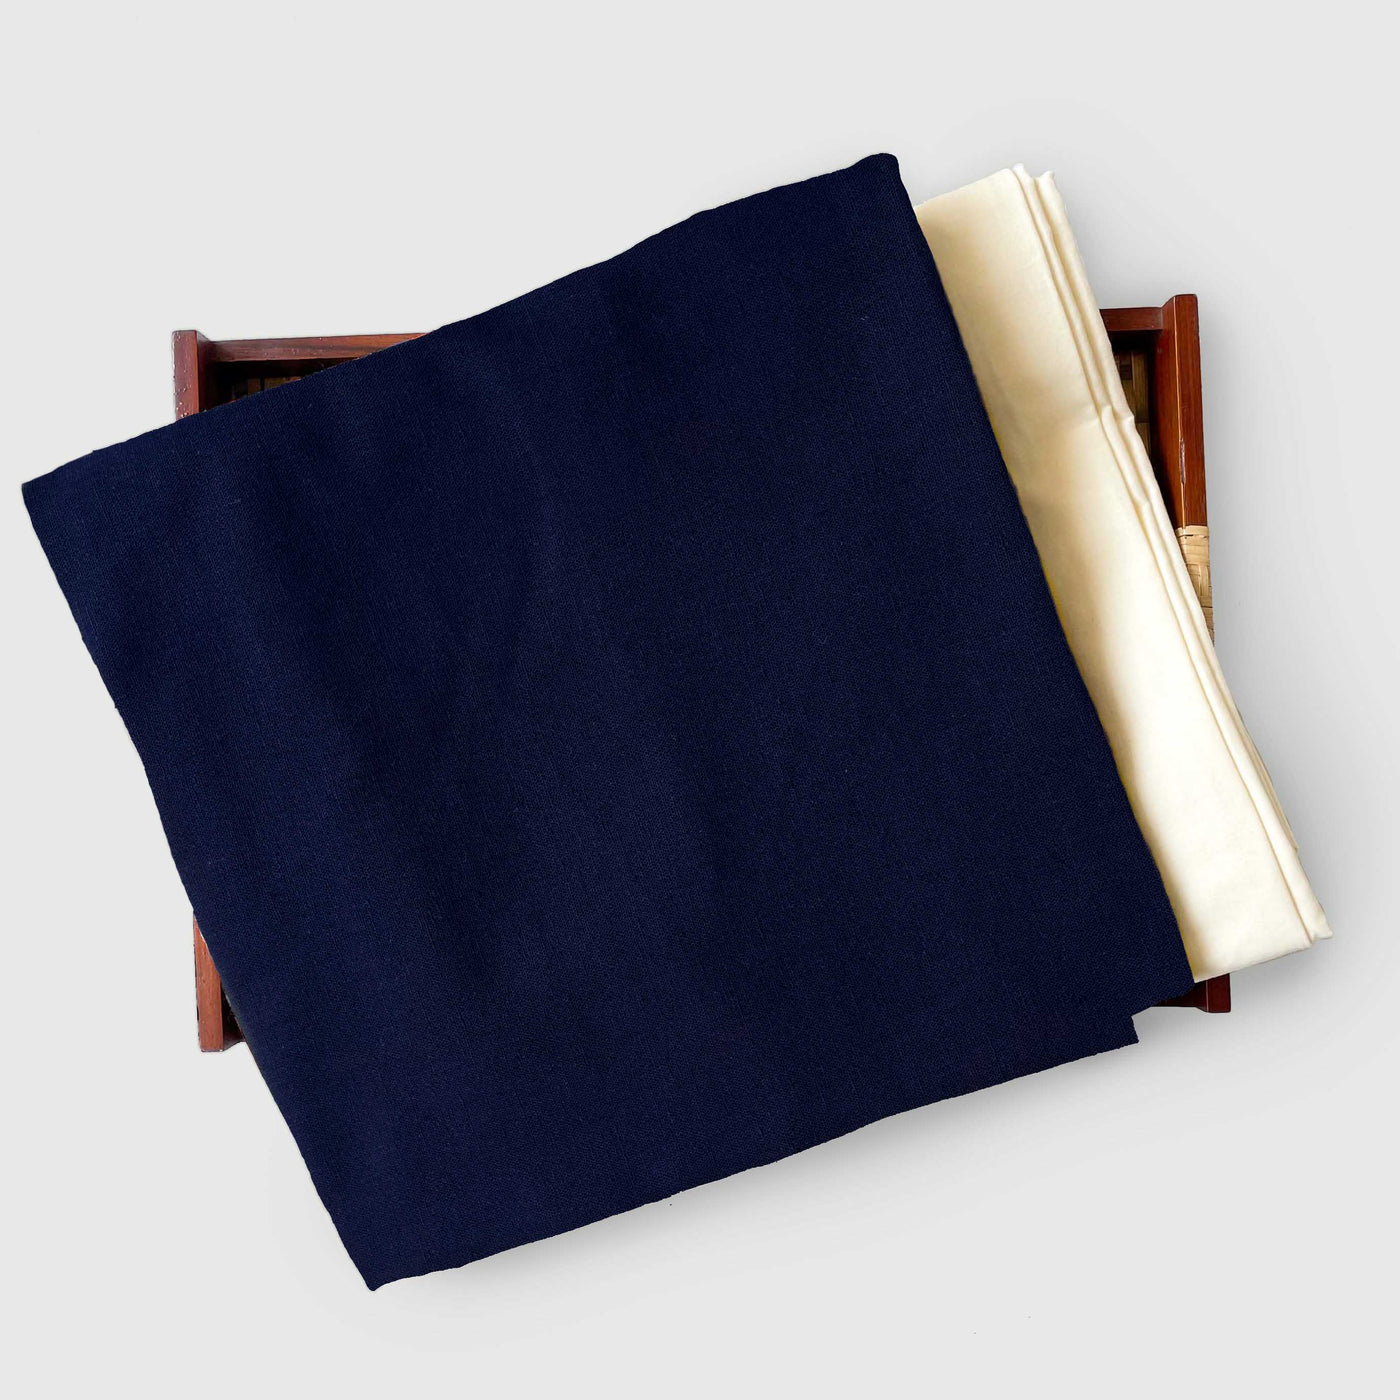 Cotton Linen Kurta Set Kurta Set Royal Blue Colour | Pure Cotton Linen Fabric (3 Meters) | and Cotton Pyjama (2.5 Meters) | Unstitched Combo Set